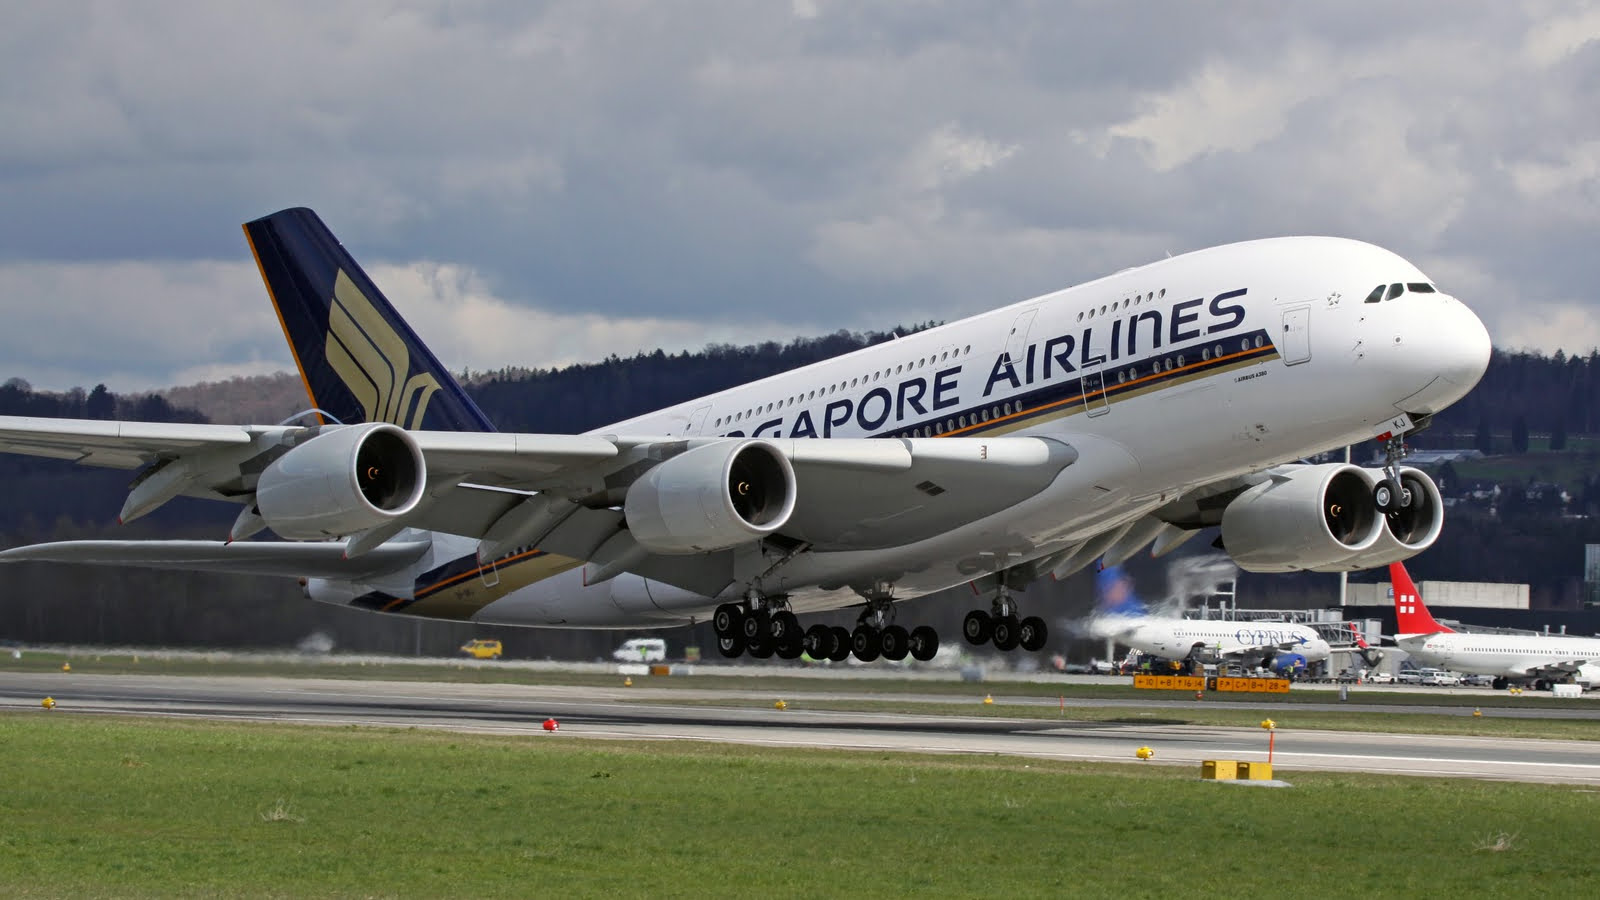 Airbus A380 - самый большой пассажирский самолет в мире. 3